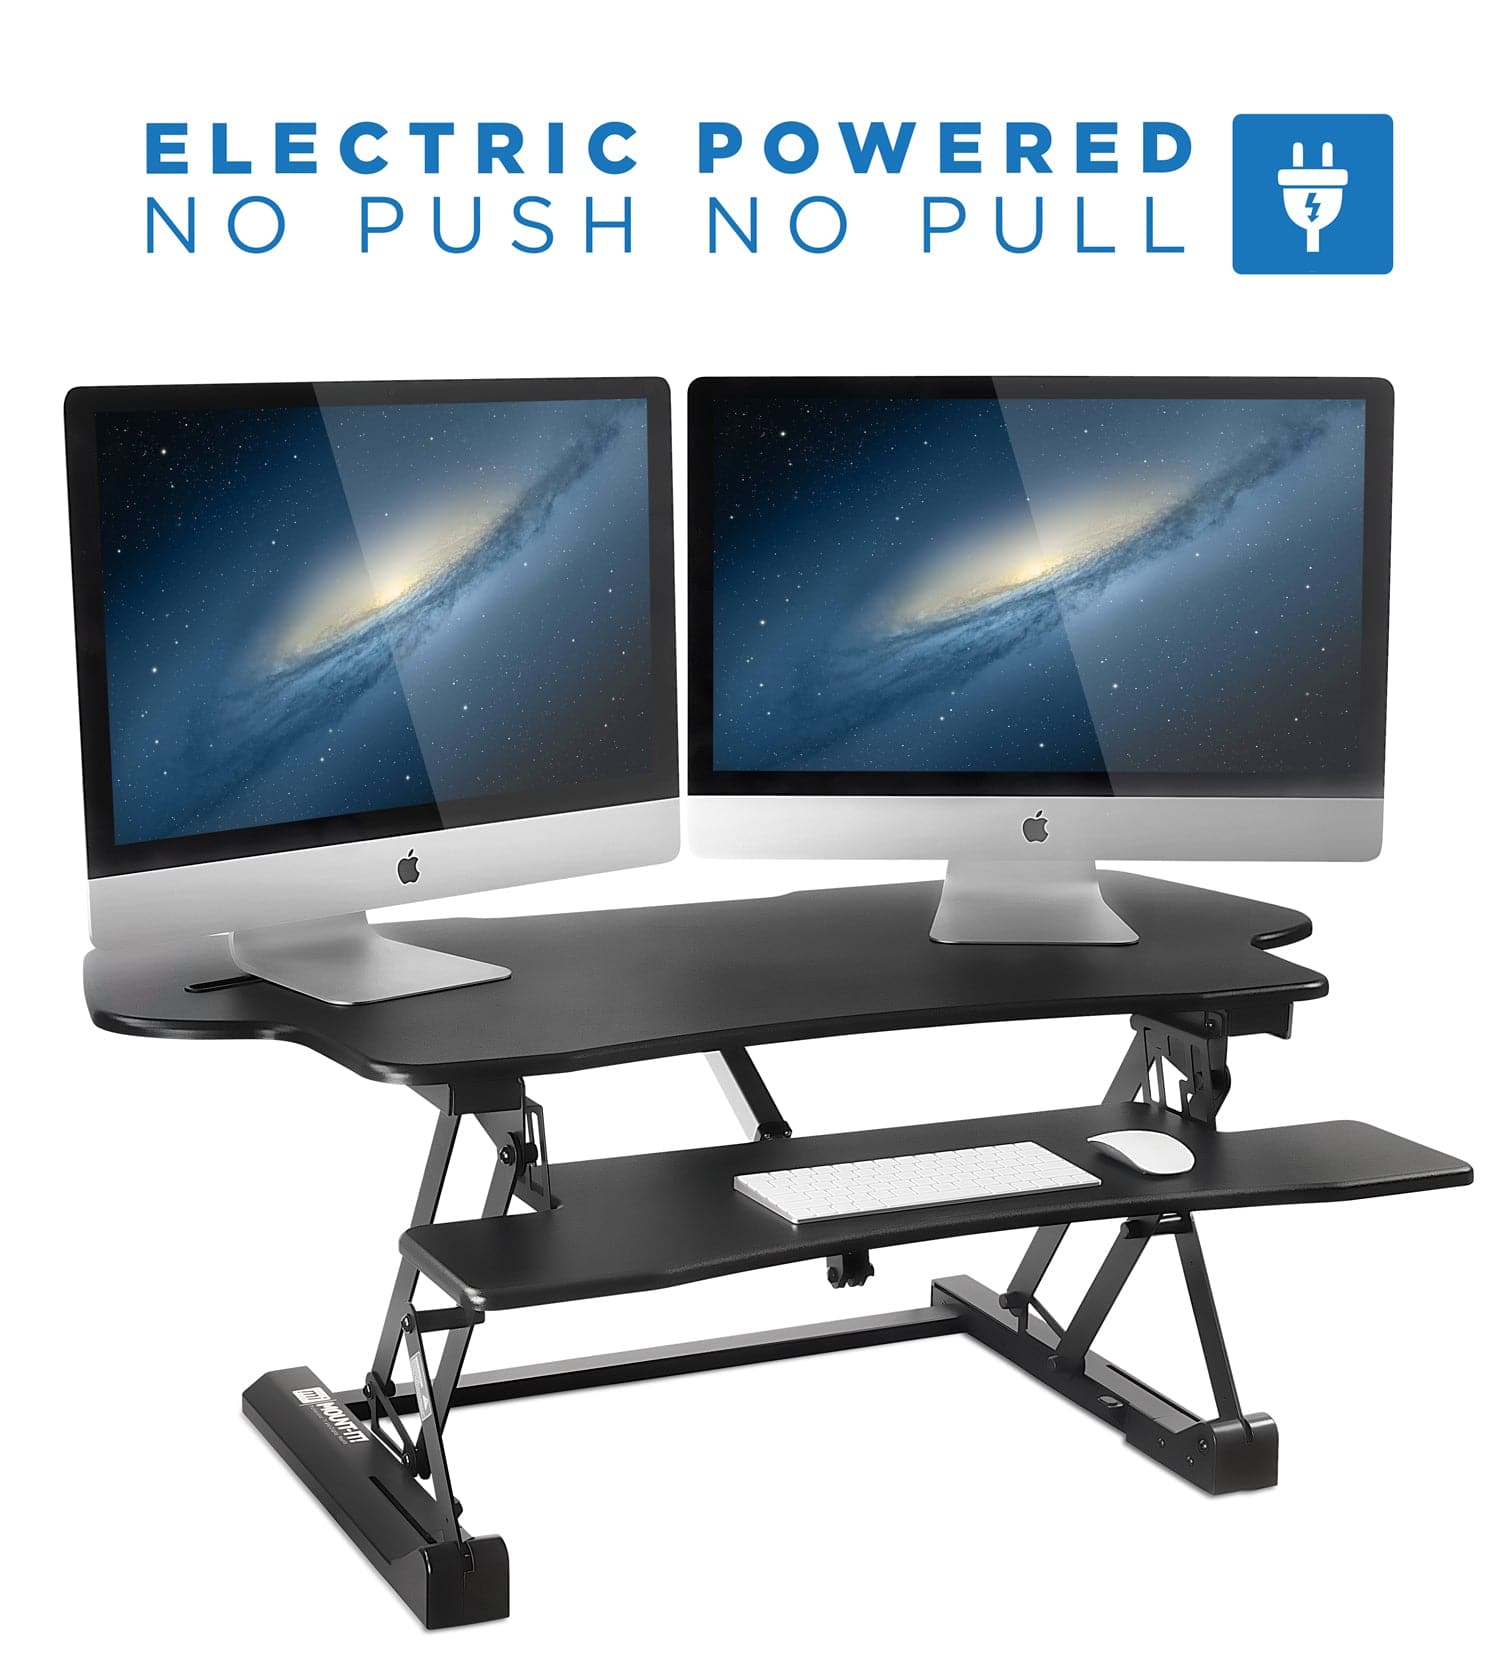 Electric Standing Desk Converter with Large Platform | MI-7962